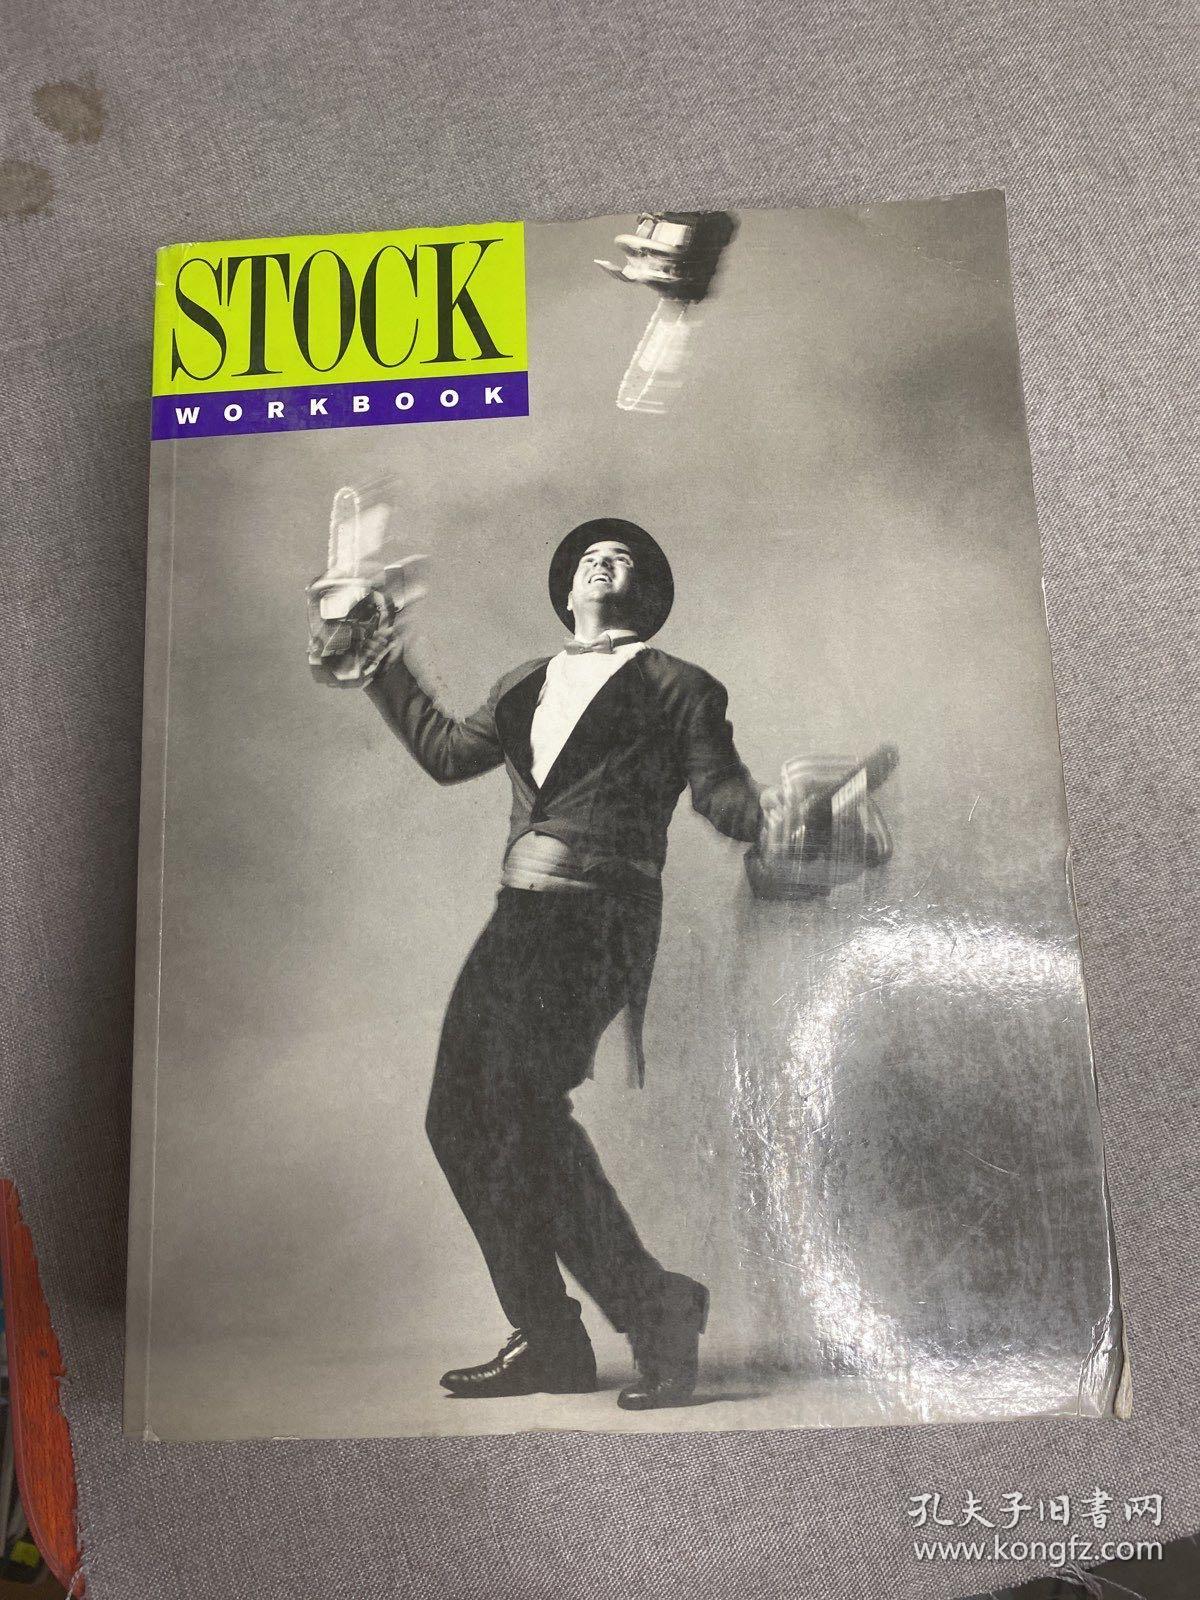 stock 12 (英文版)WORKBOOK